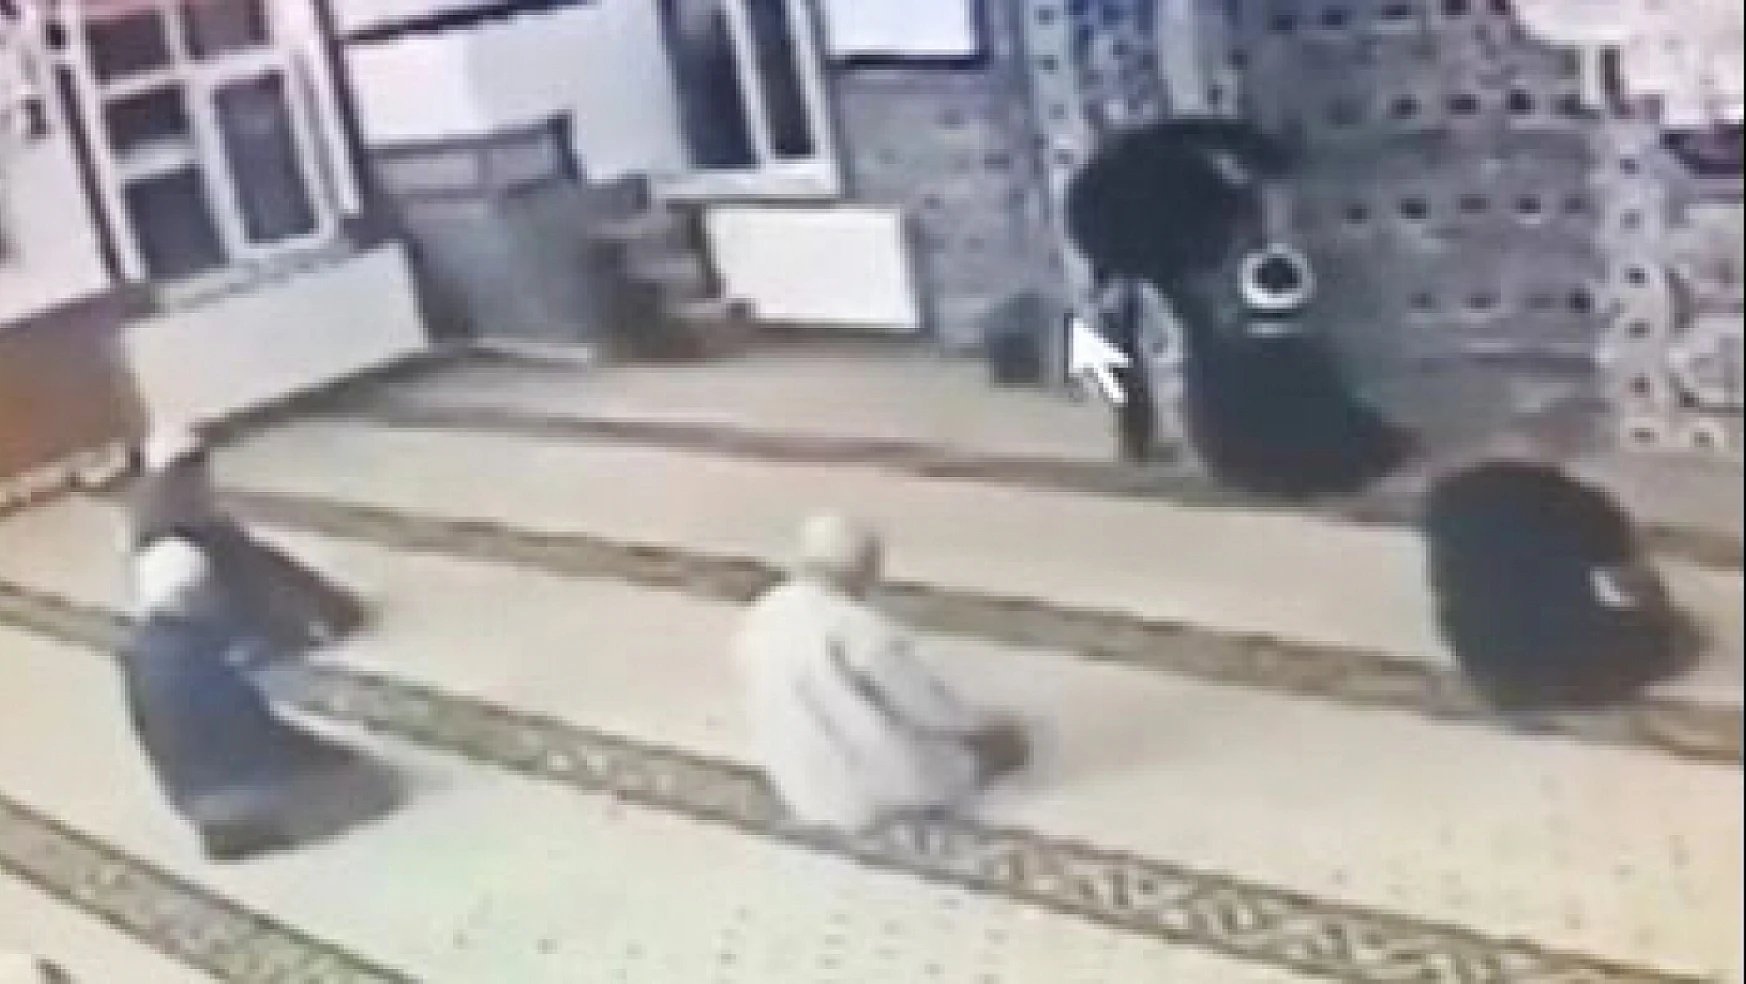 Isparta'daki olayda gelişme! Camiye ayakkabı ile giren şahıs Konya'da psikiyatri servisine yatışı yapıldı!